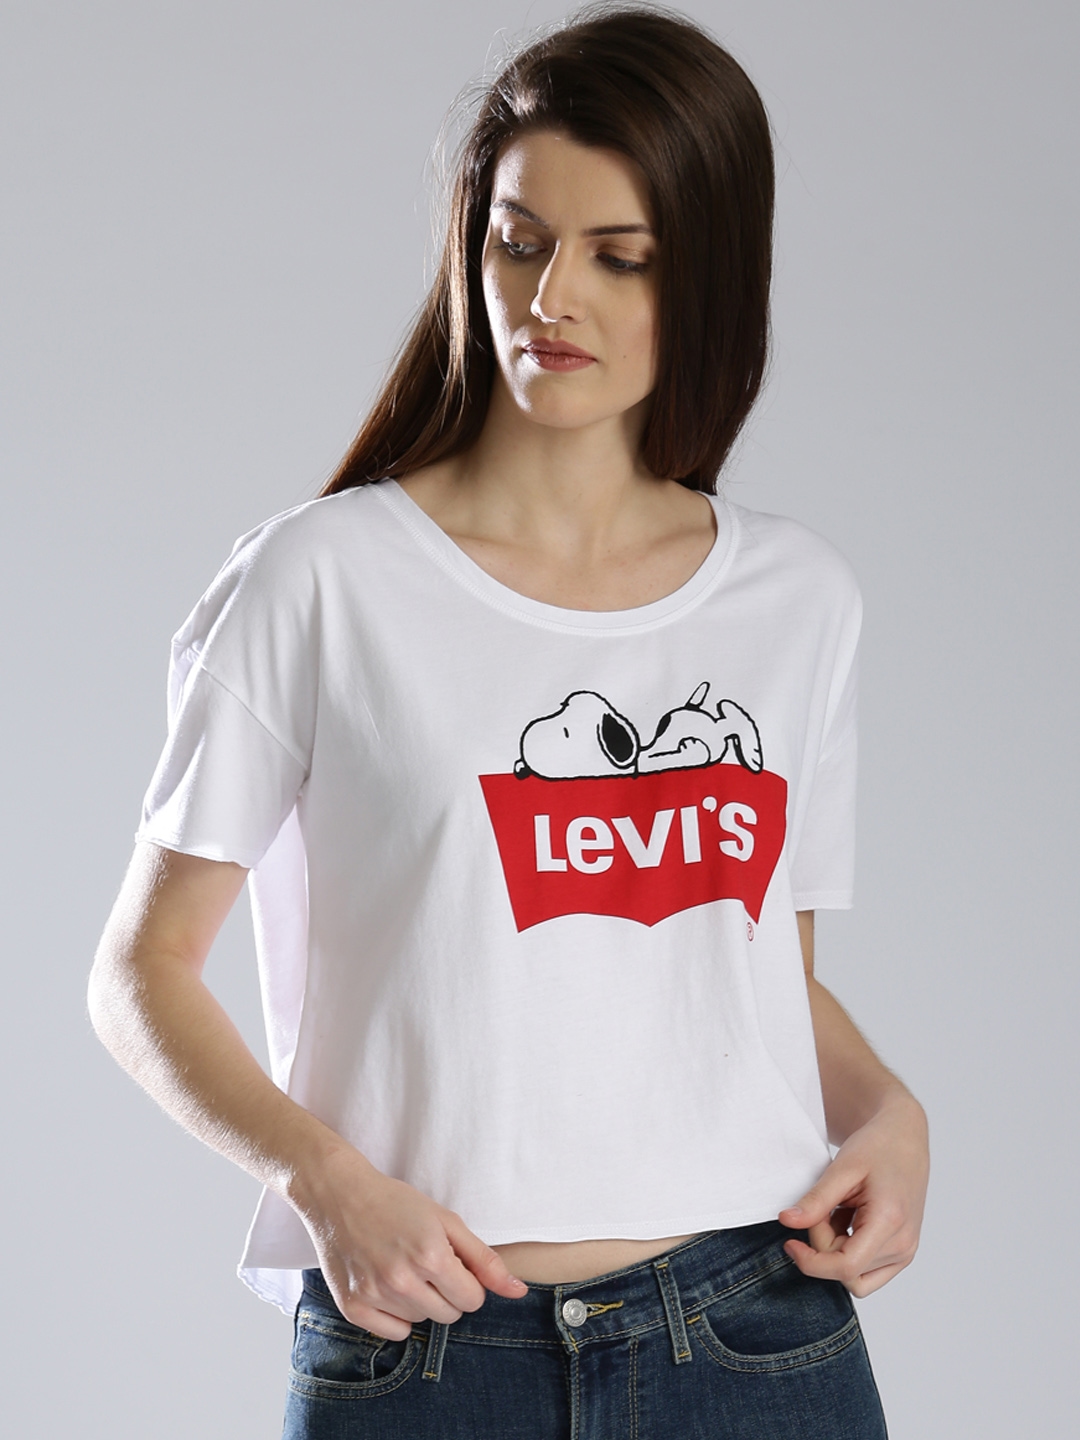 levis girl shirt